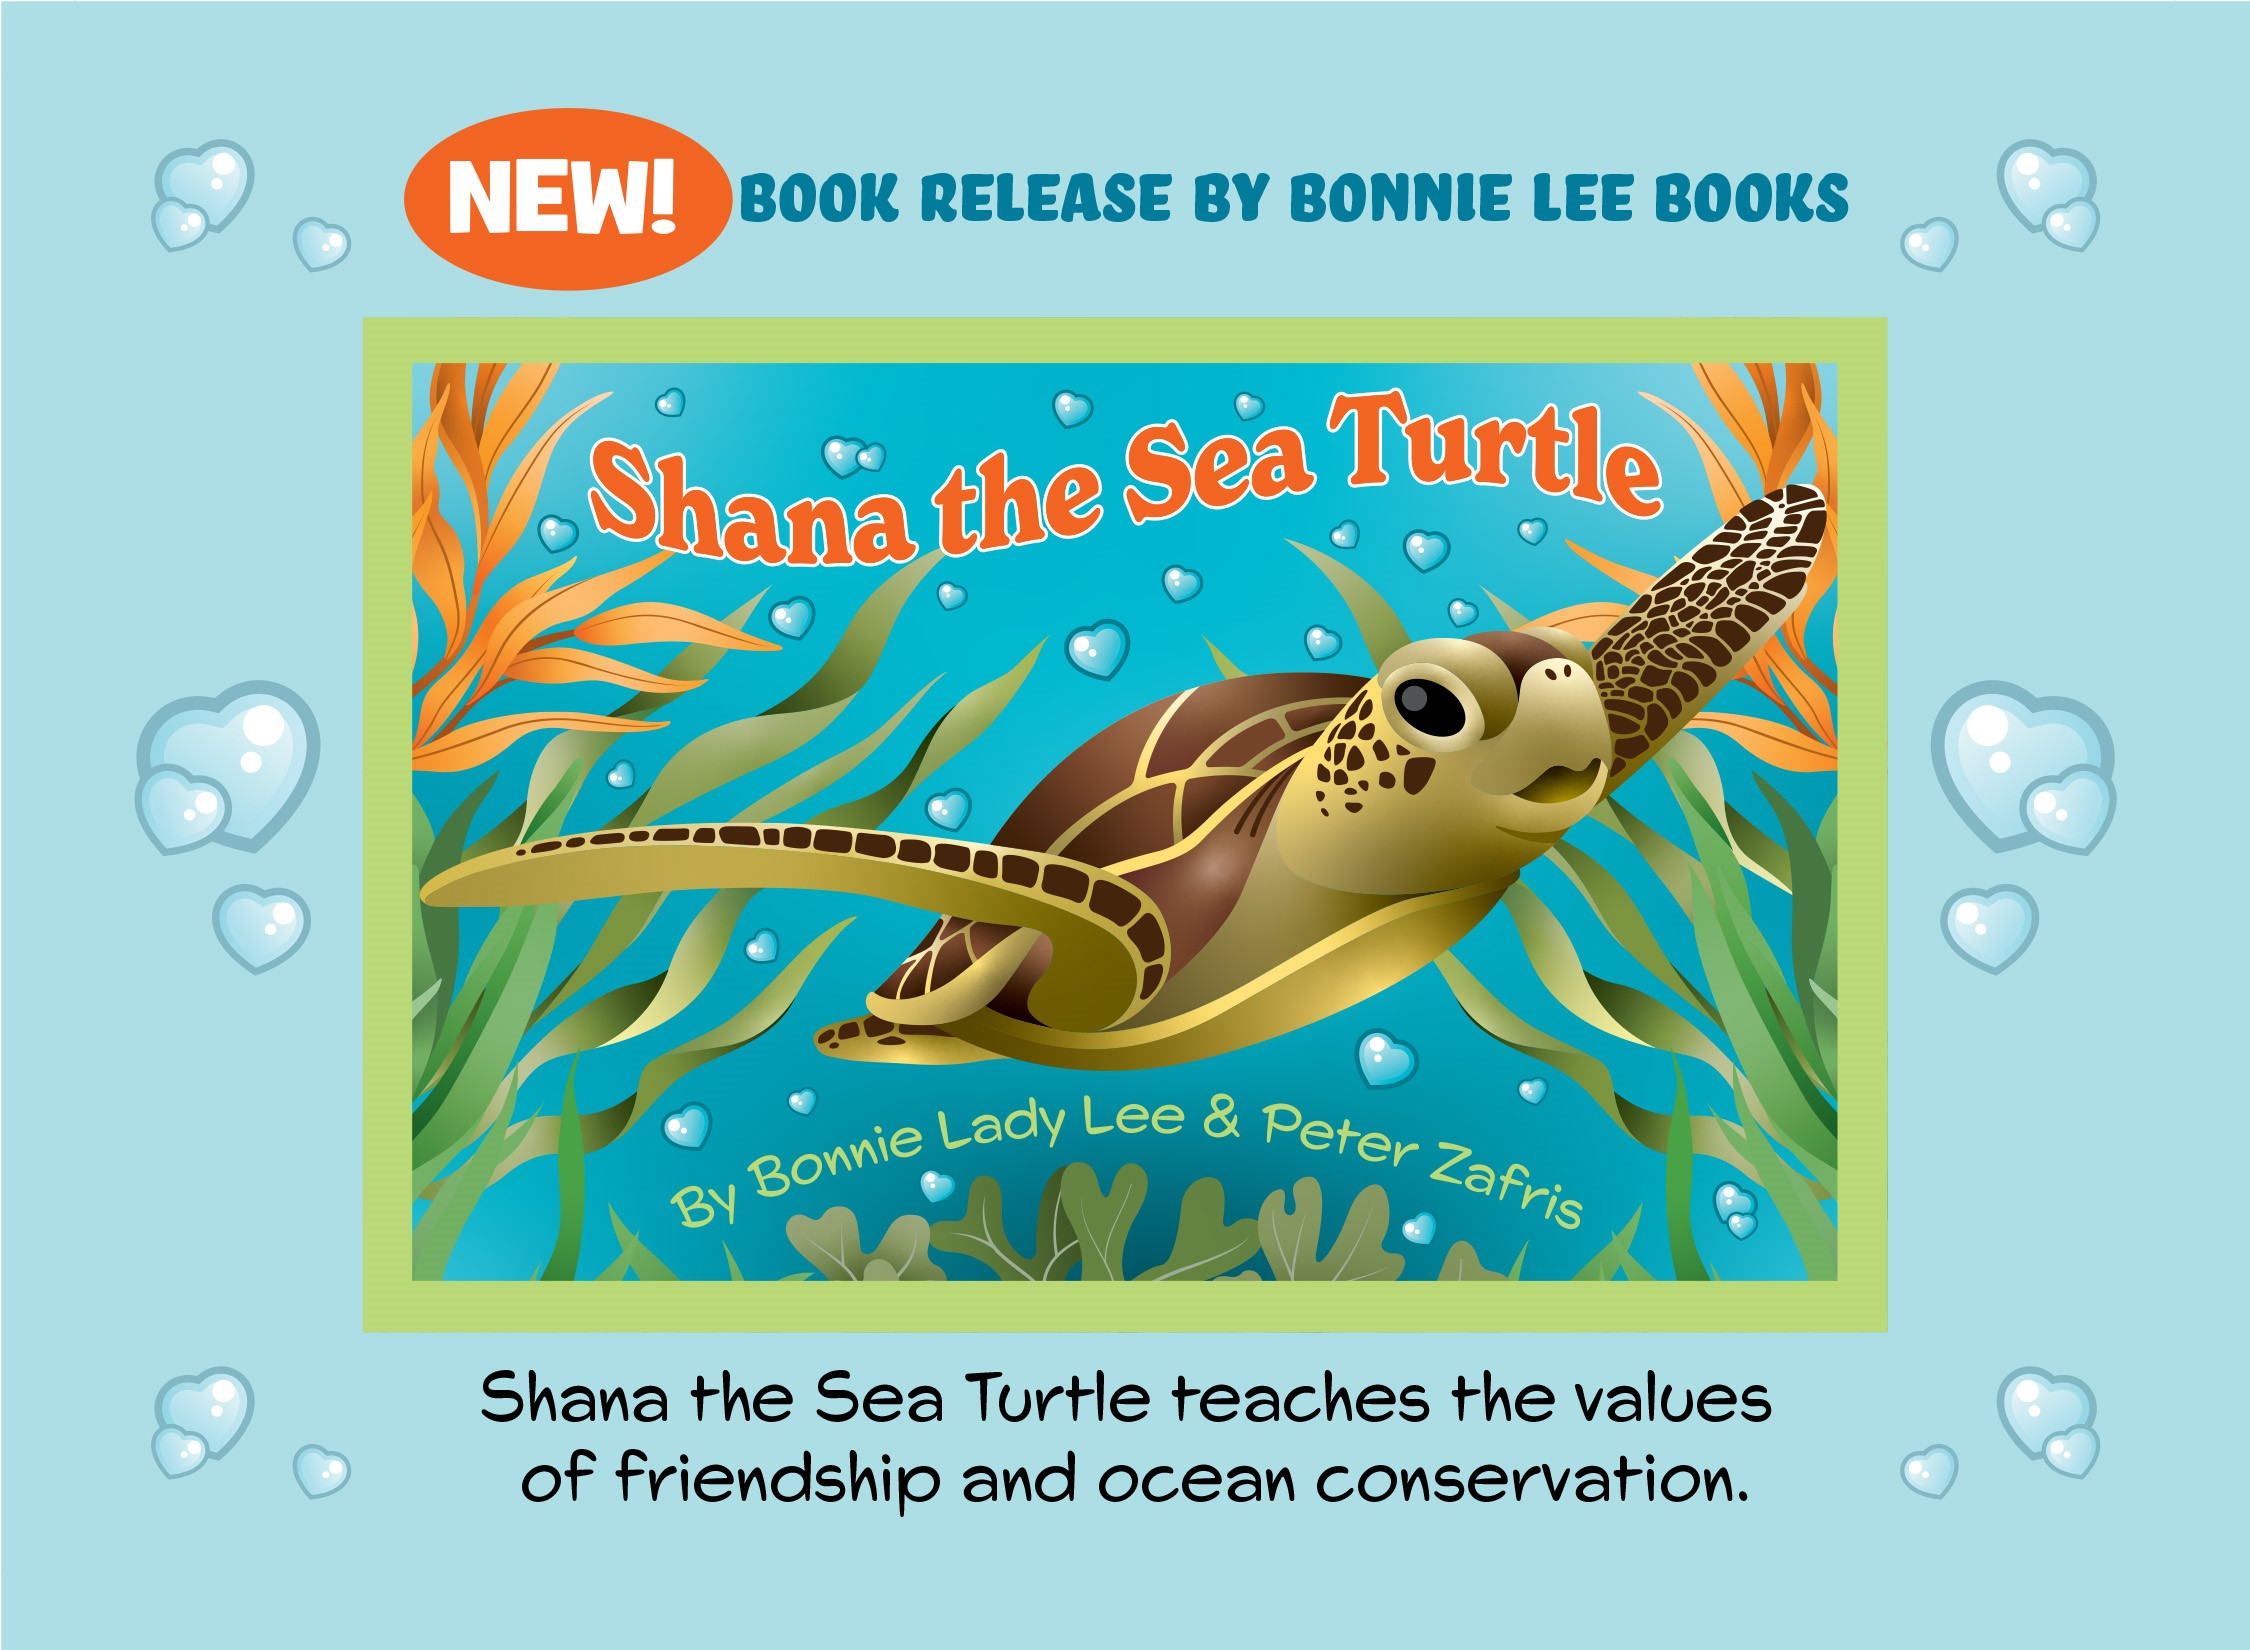 Shana the Sea Turtle